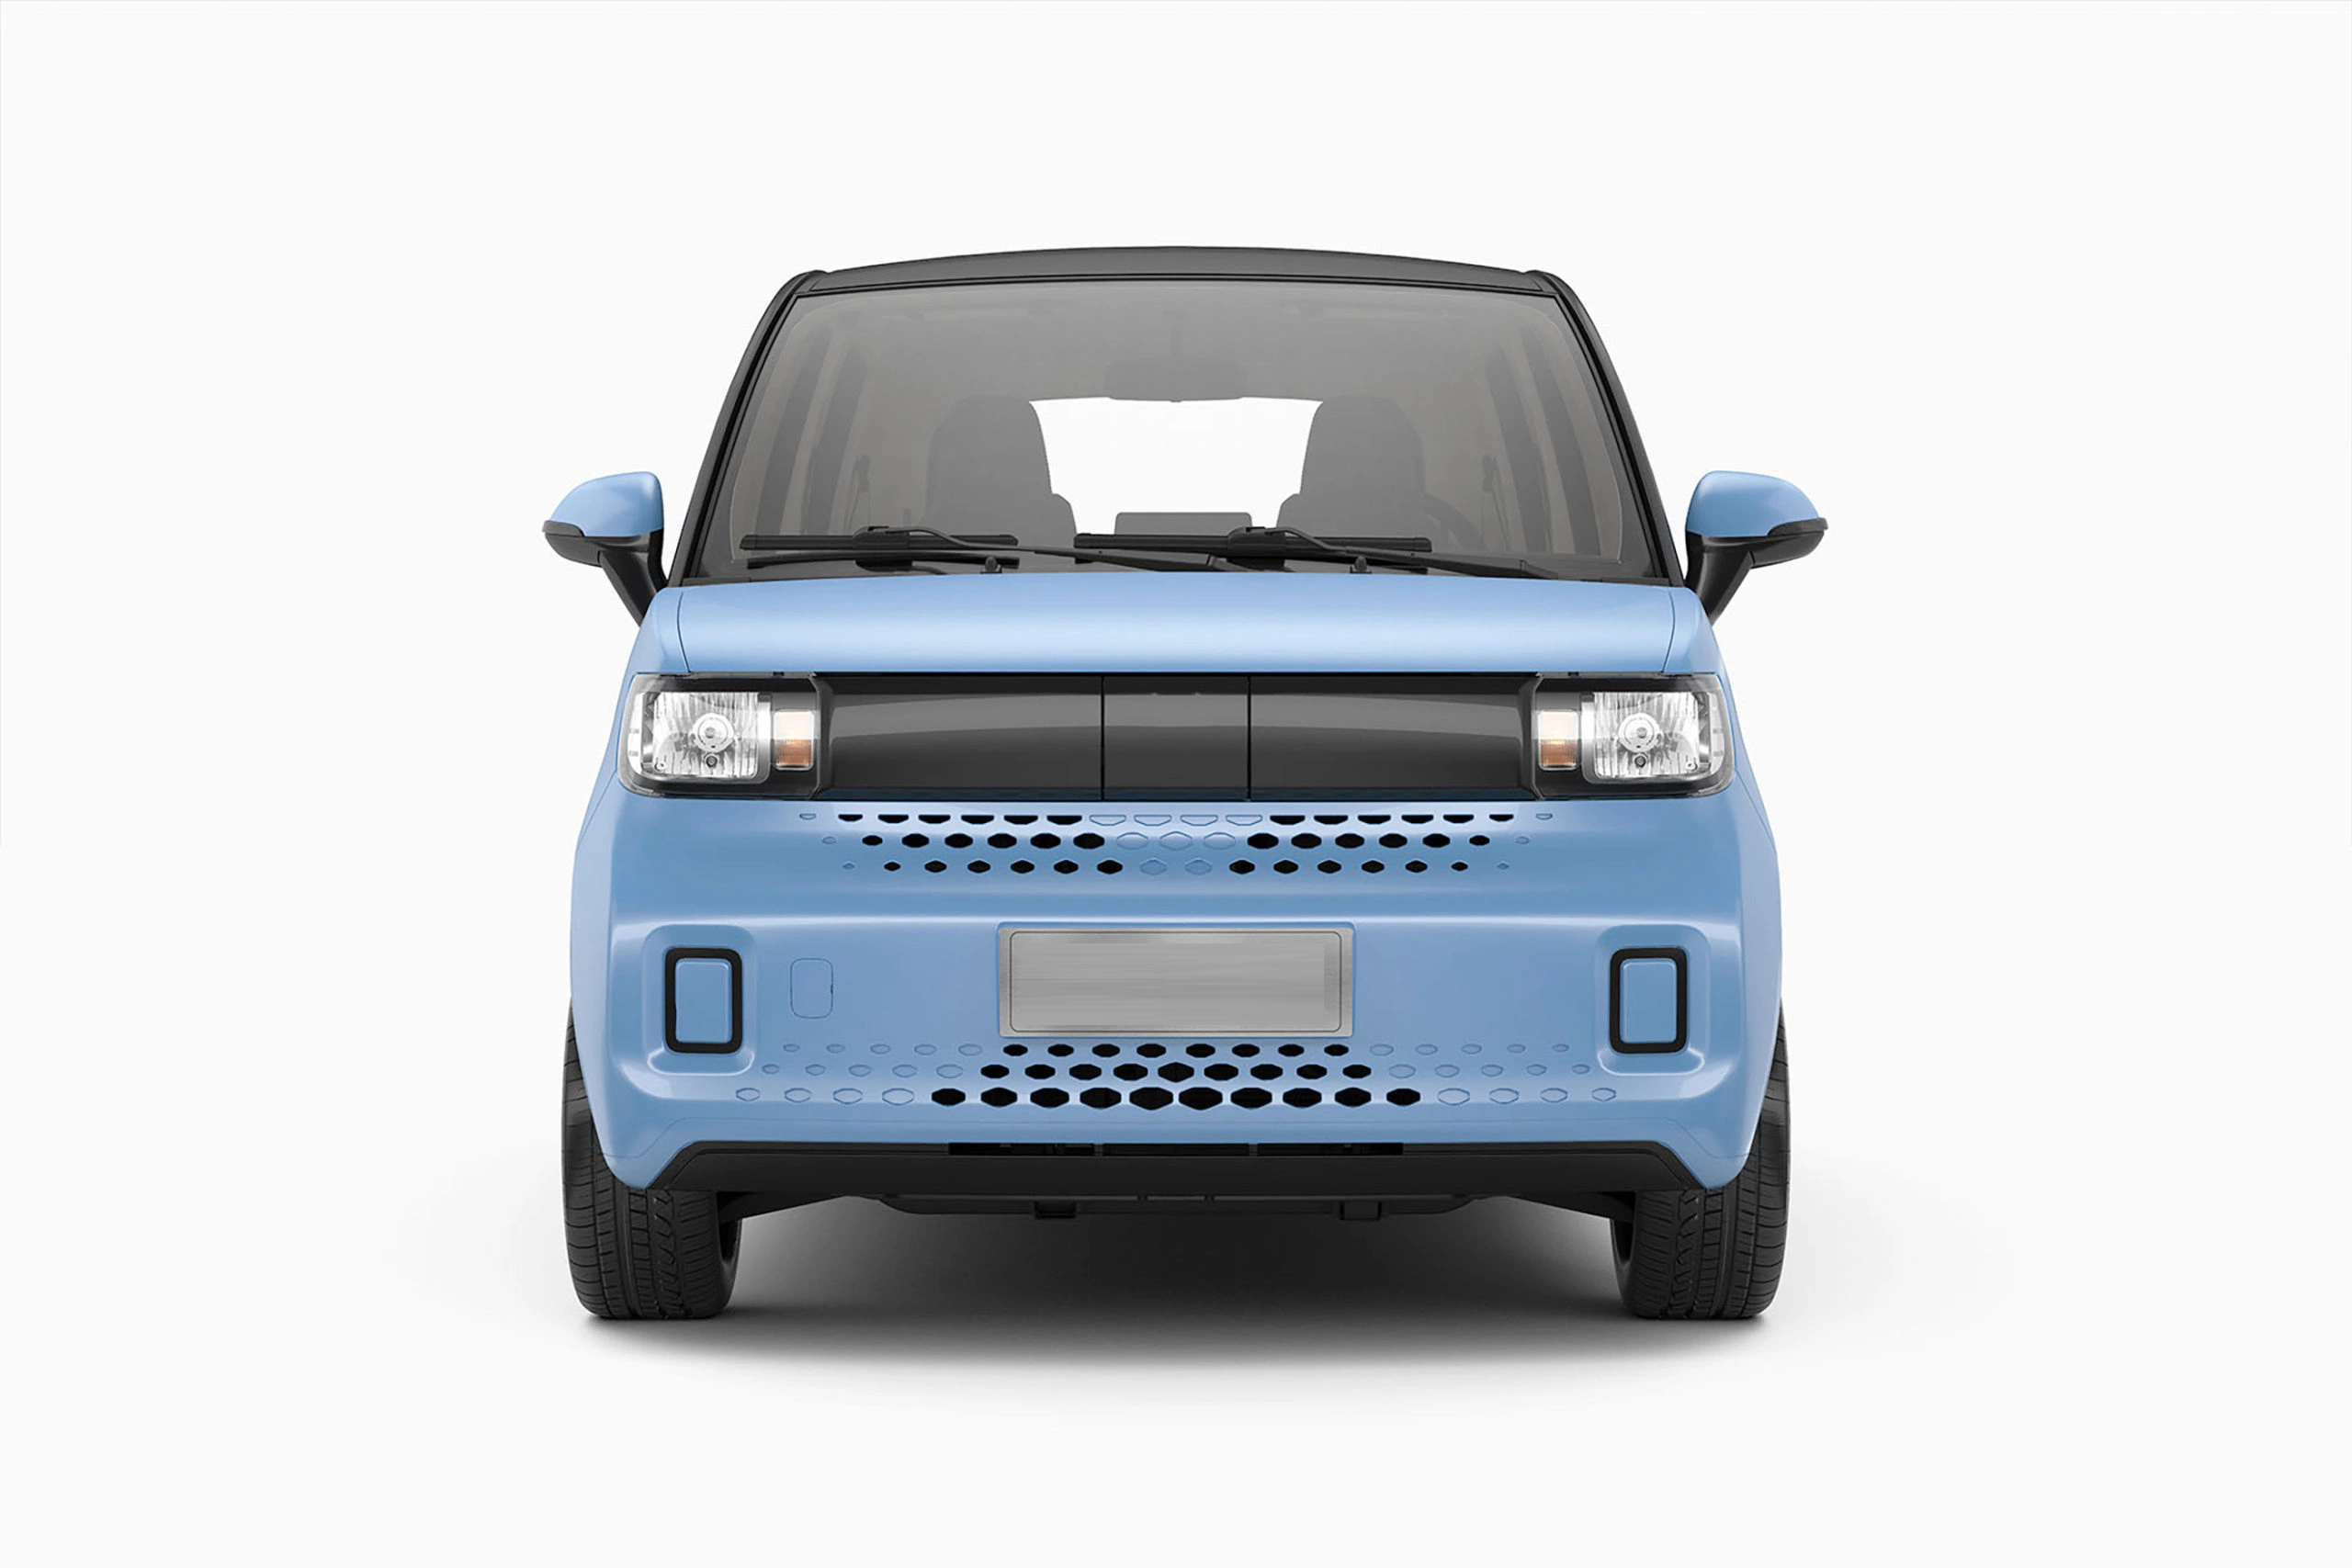 مصنع الصين بيع الطاقة المتجددة الطاقة الكهربائية مركبة كهربائية للبالغين EV سيارة عالية السرعة بالجملة السعر Smart Mini EV سيارة مستدامة إمكانية التنقل